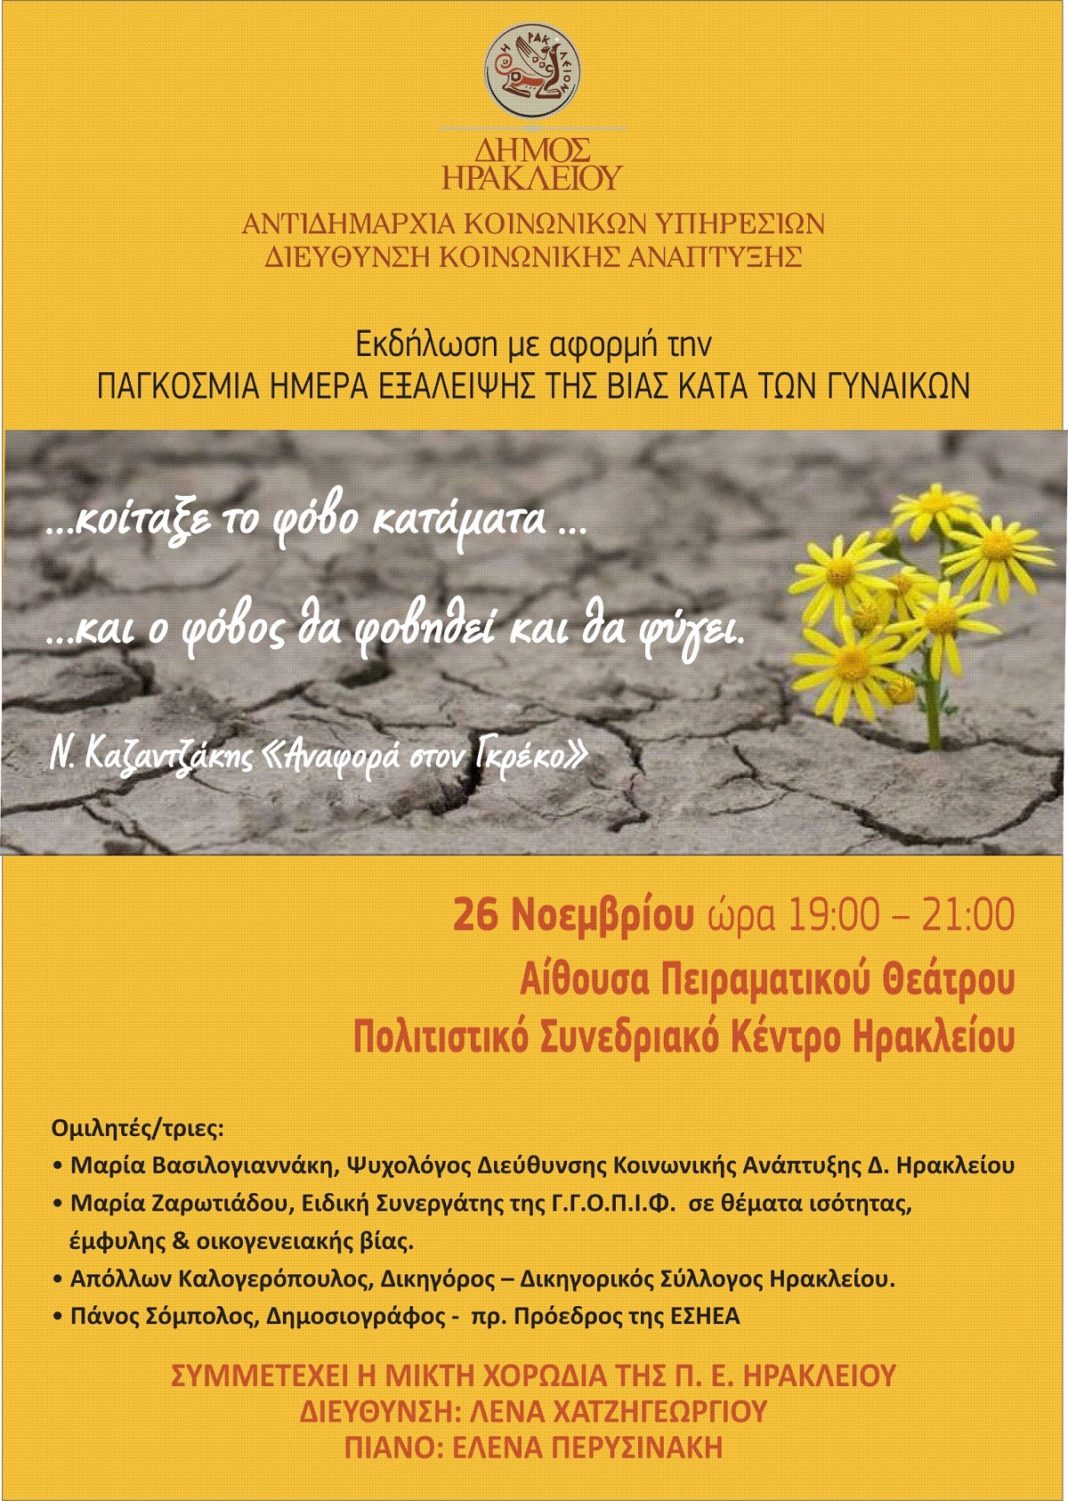 Εκδήλωση για το φαινόμενο της έμφυλης βίας στο Ηράκλειο